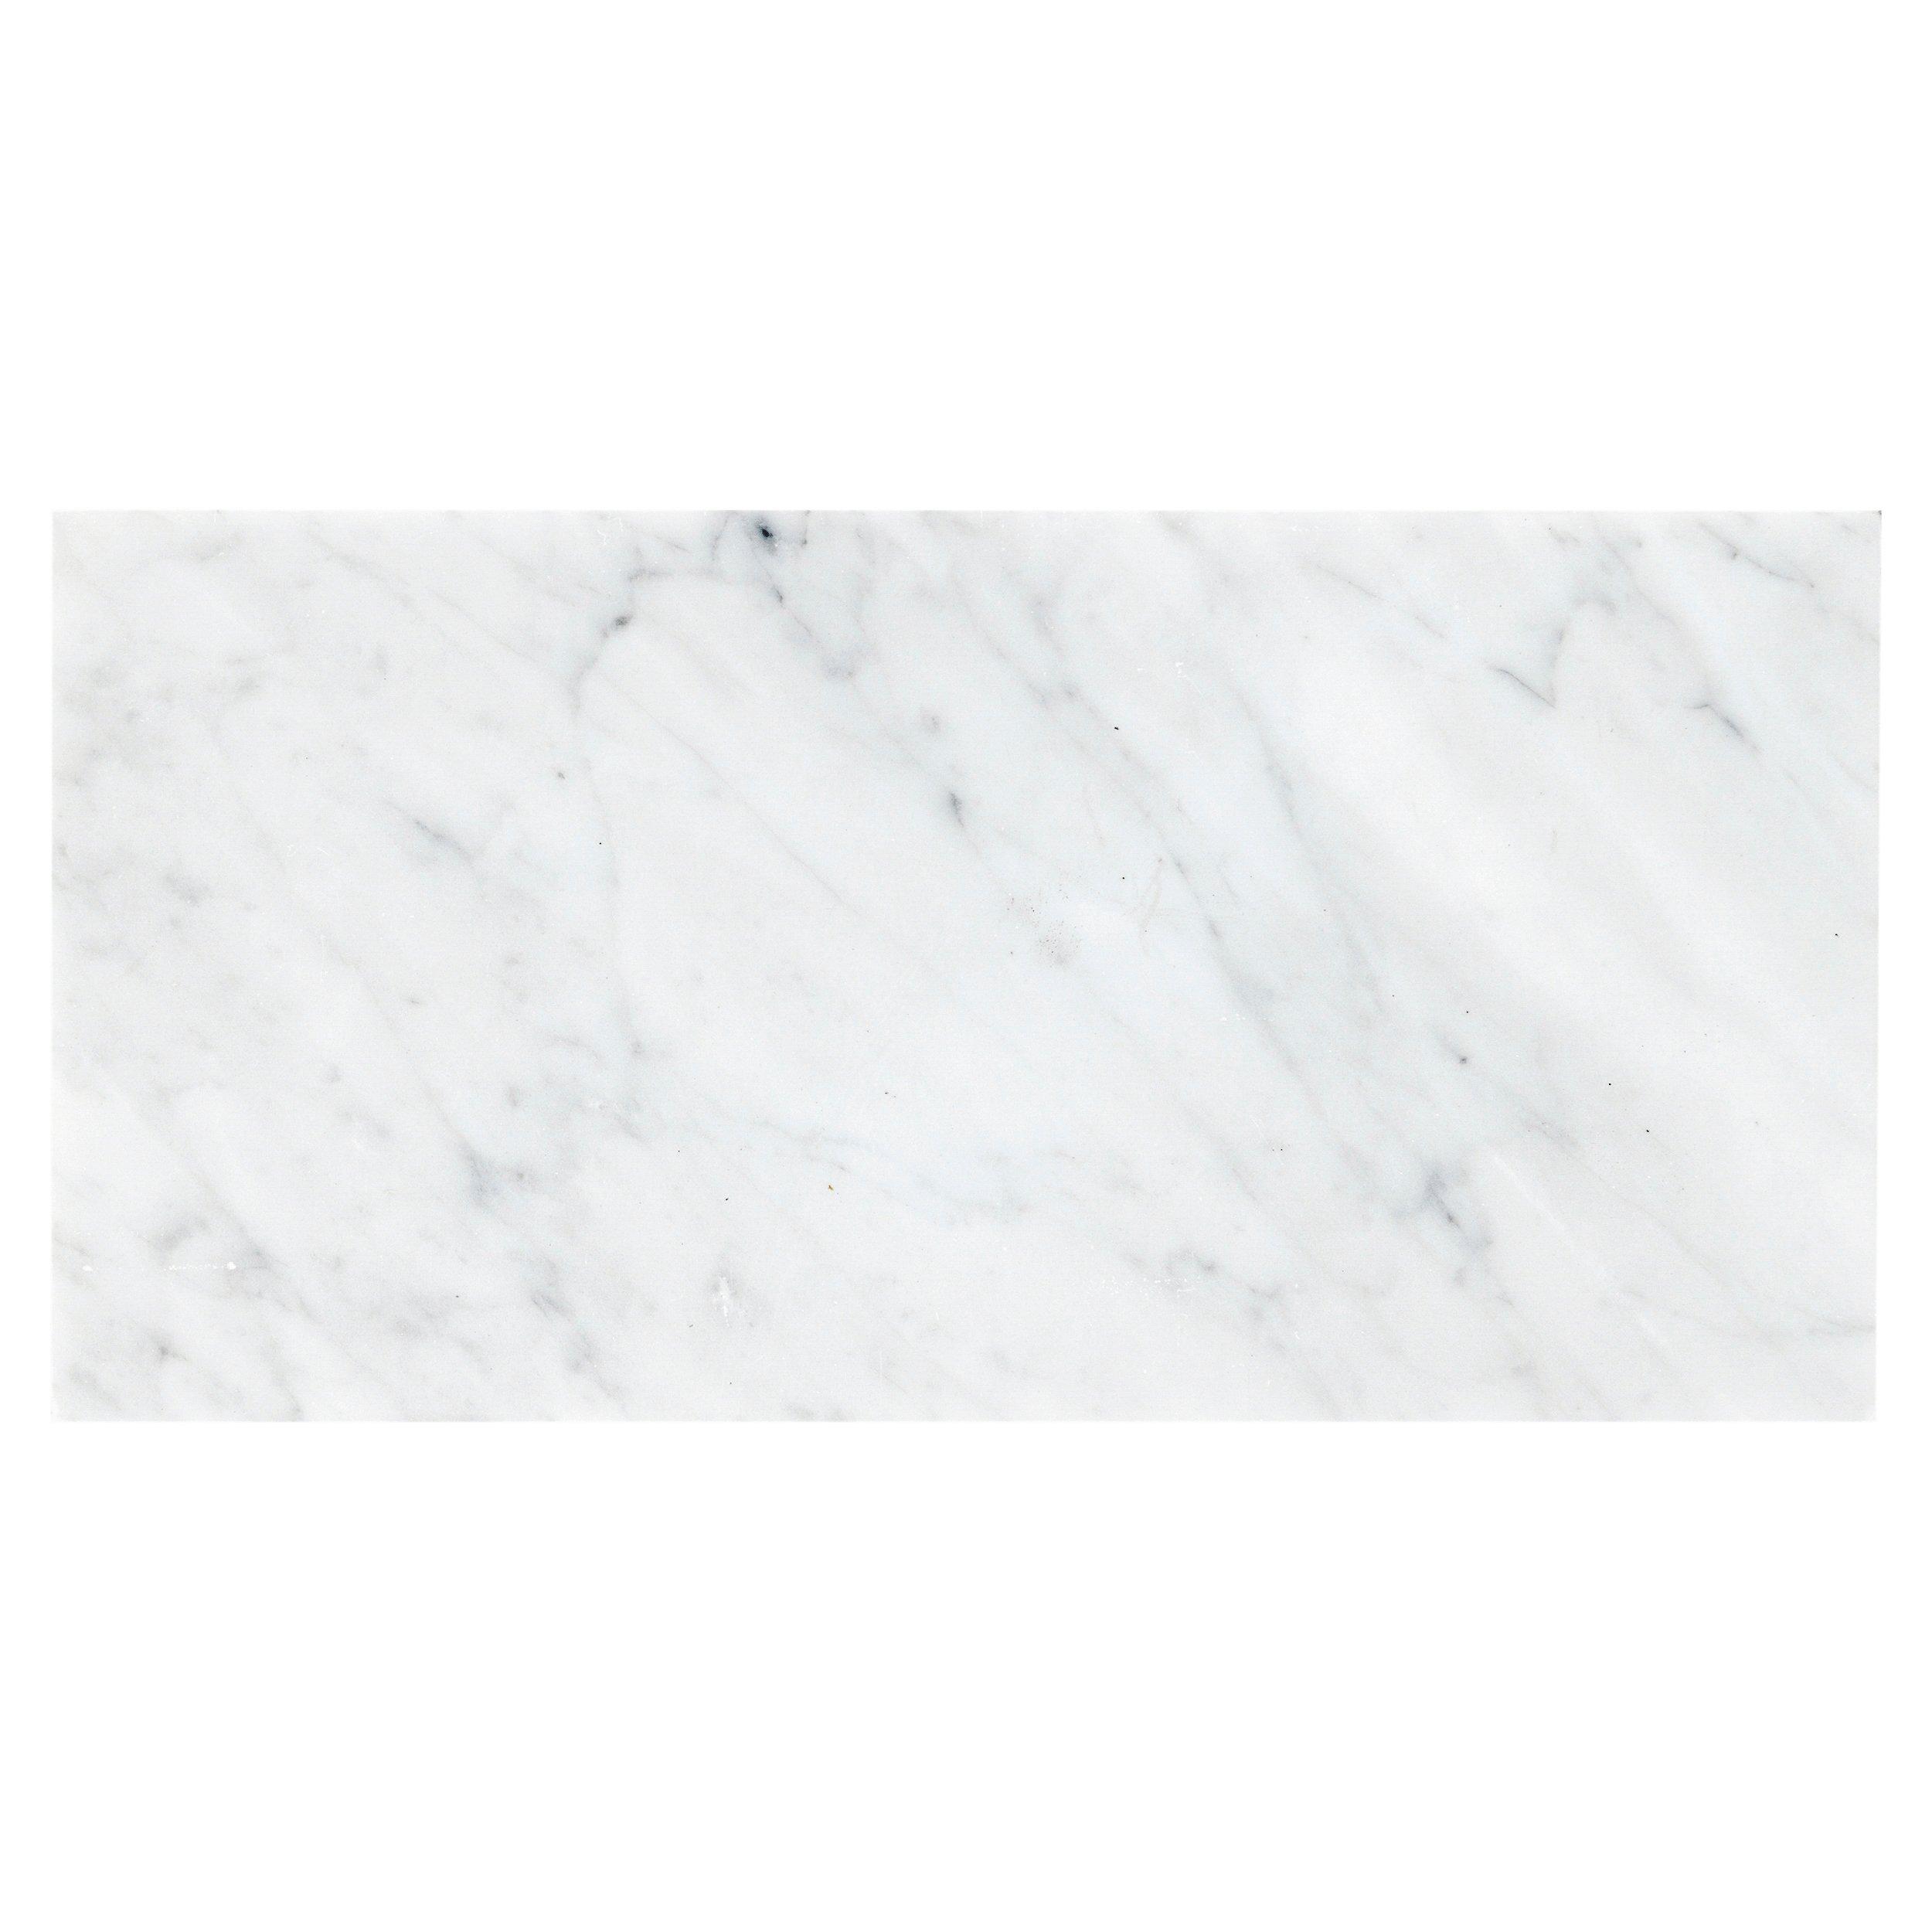 Framework Tredive smække Bianco Carrara Marble Tile | Floor and Decor